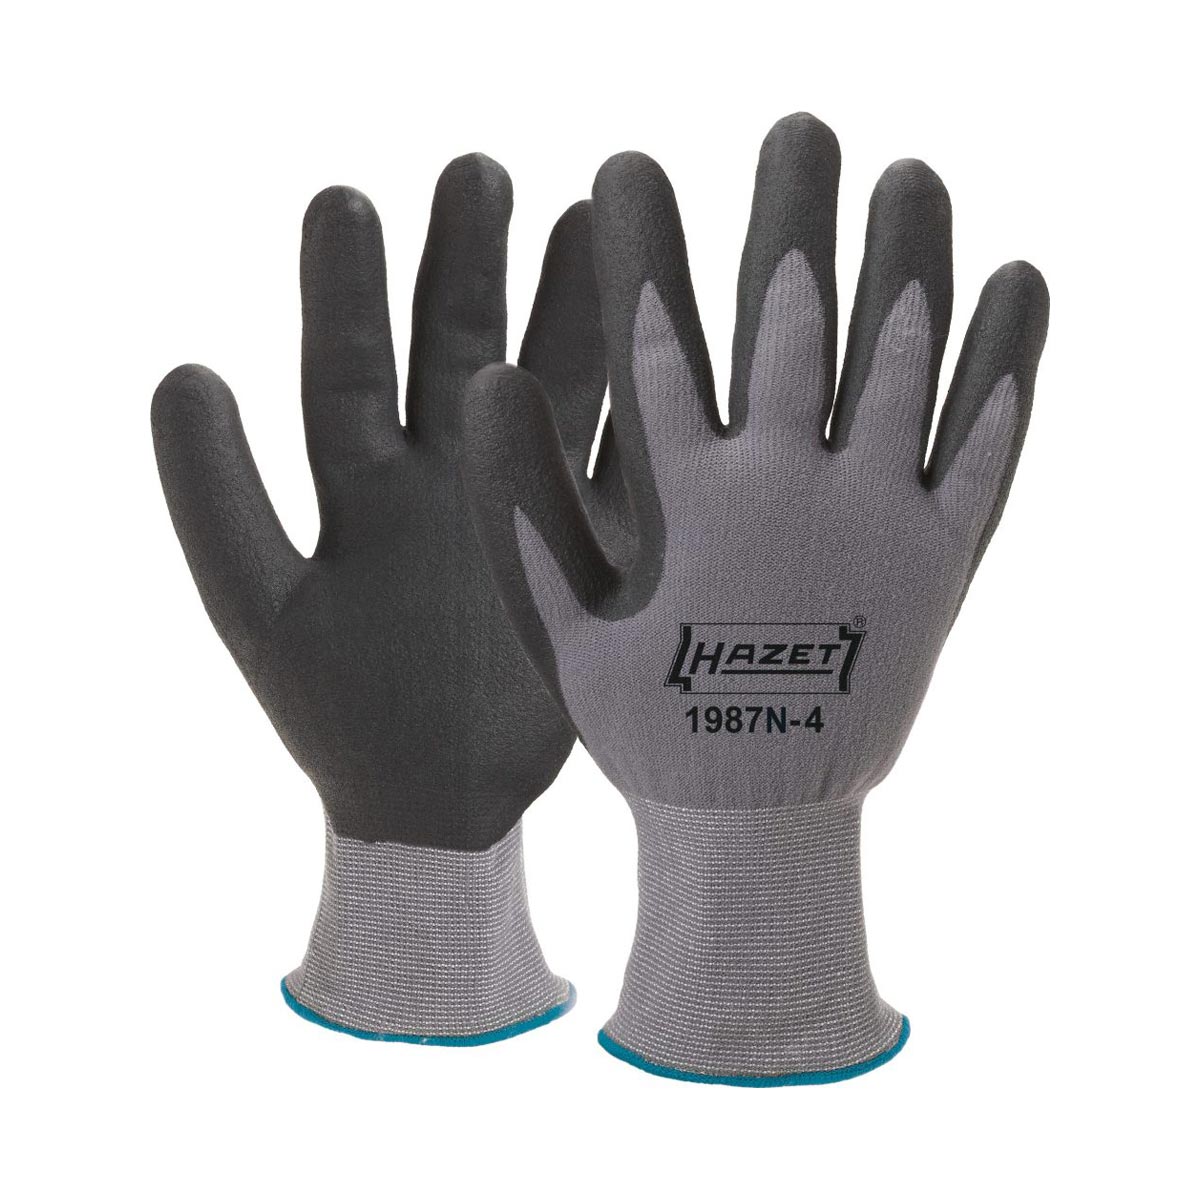 HAZET 1987N-4 Gloves, one size